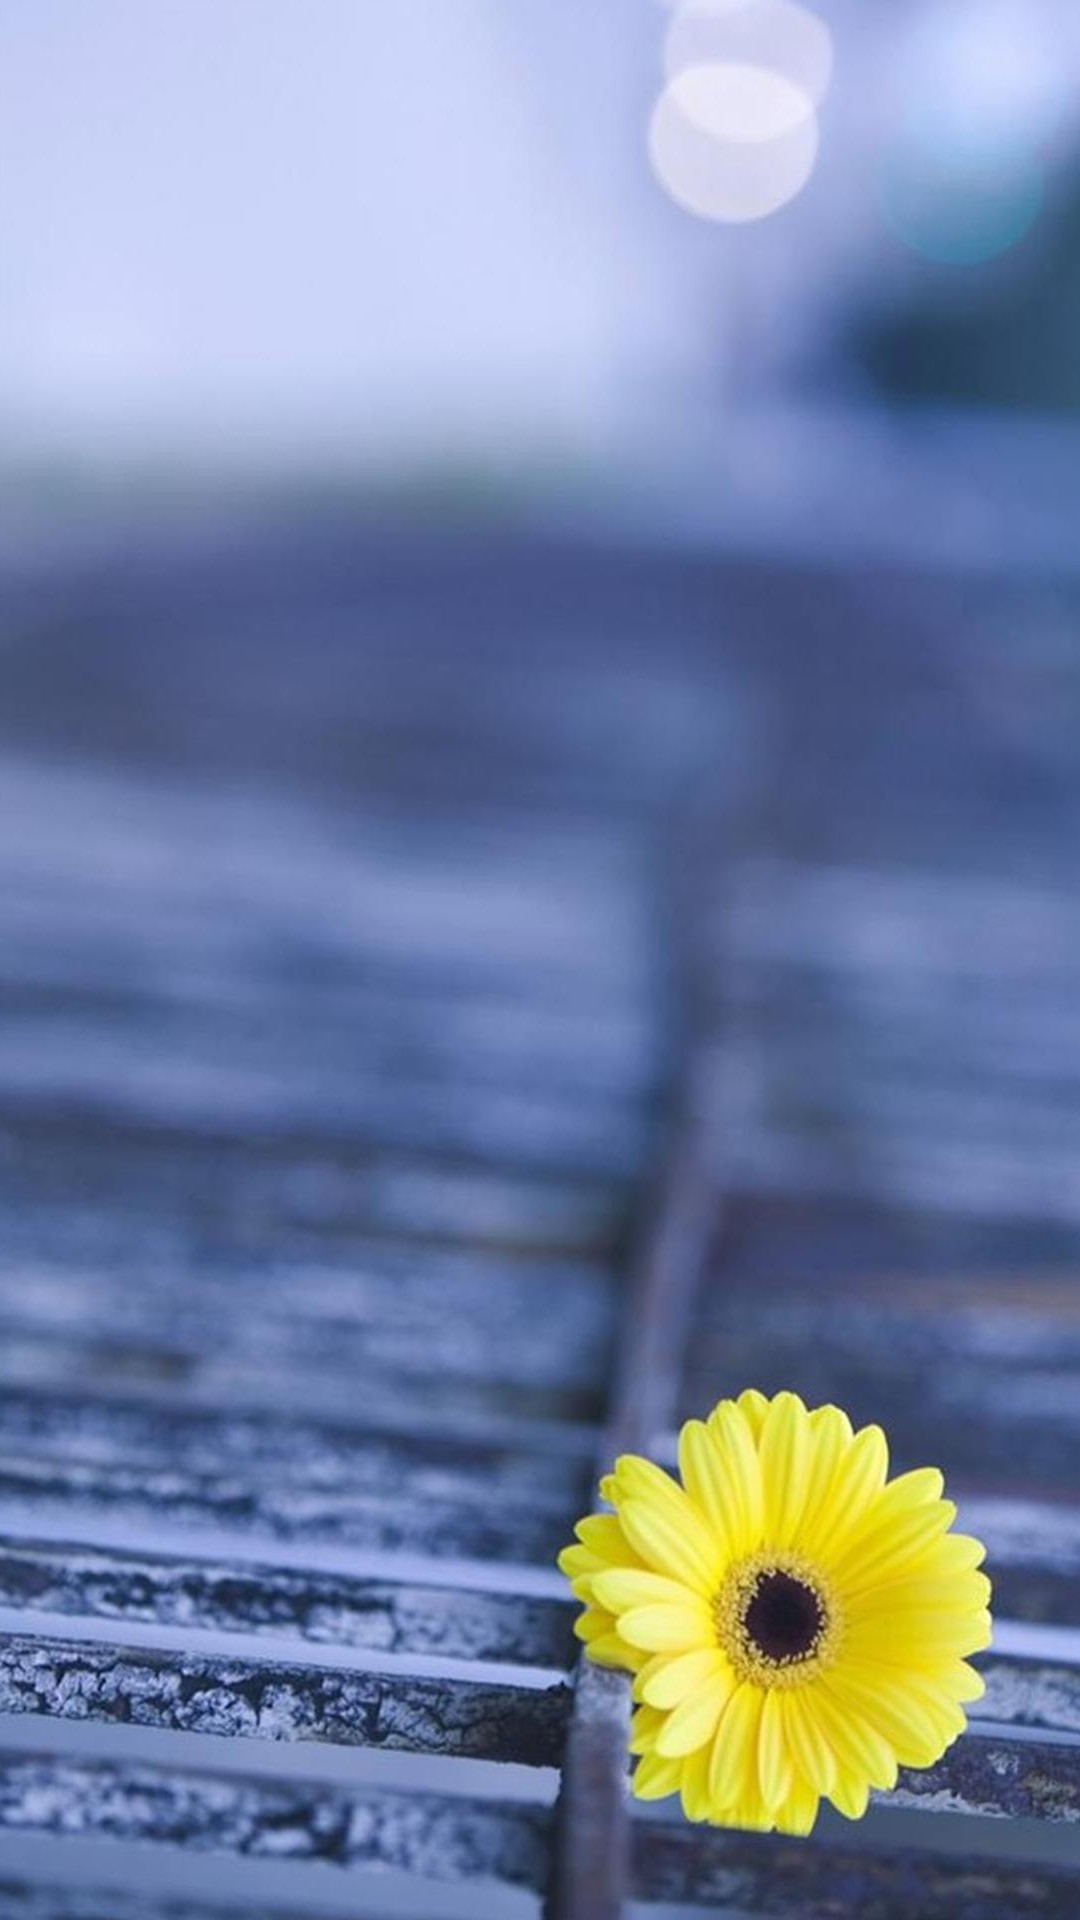 hd flower wallpaper per il download gratuito di dispositivi mobili,natura,giallo,fiore,petalo,cielo